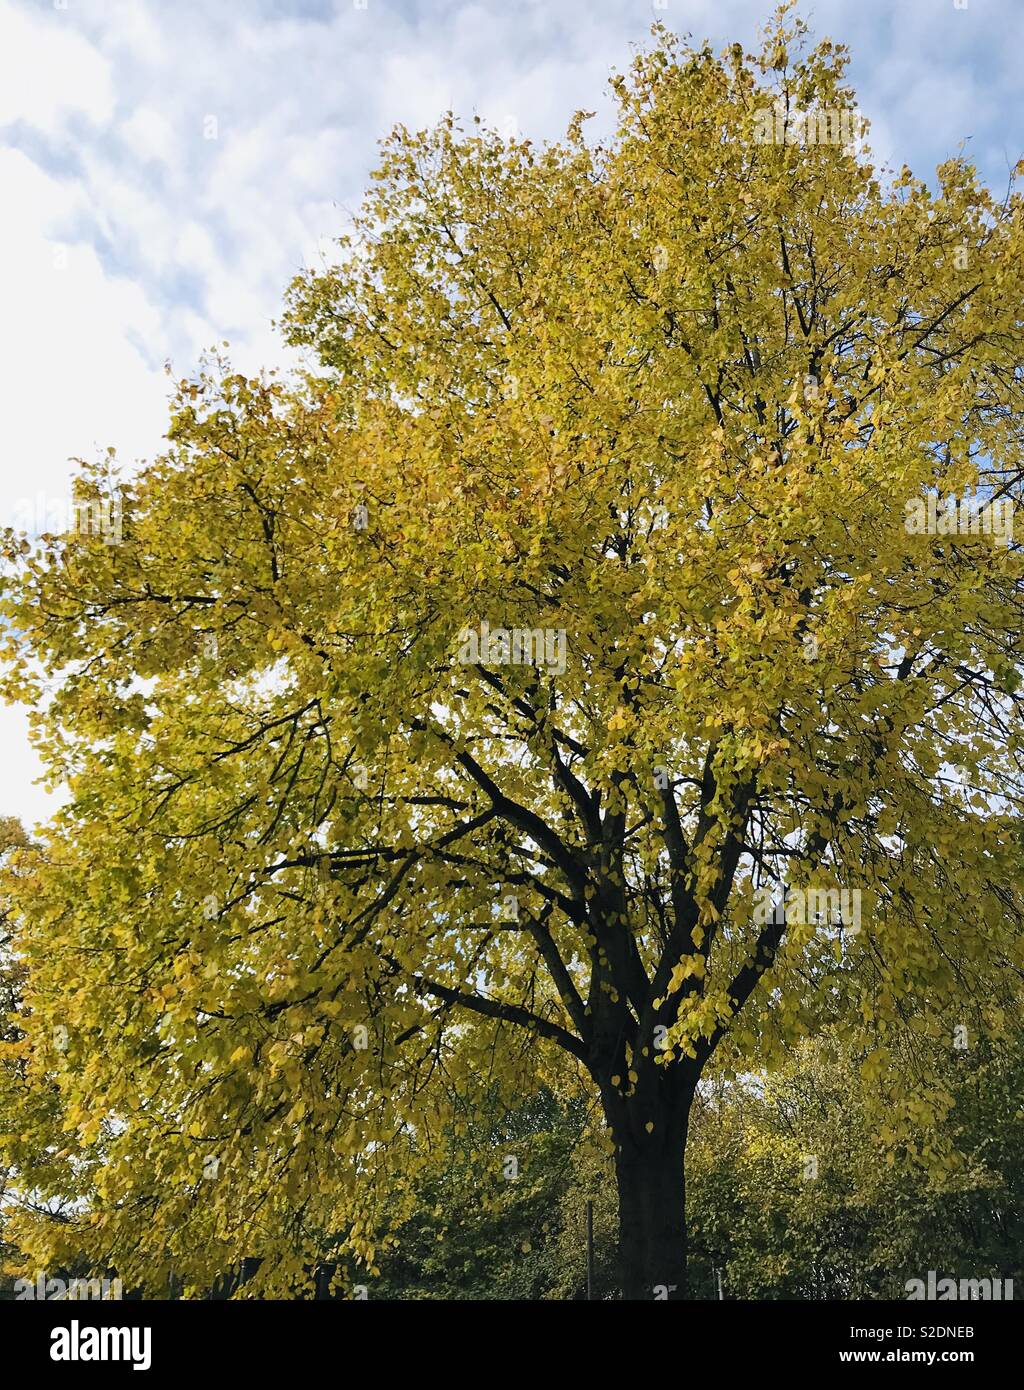 Yellow trees Stock Photo